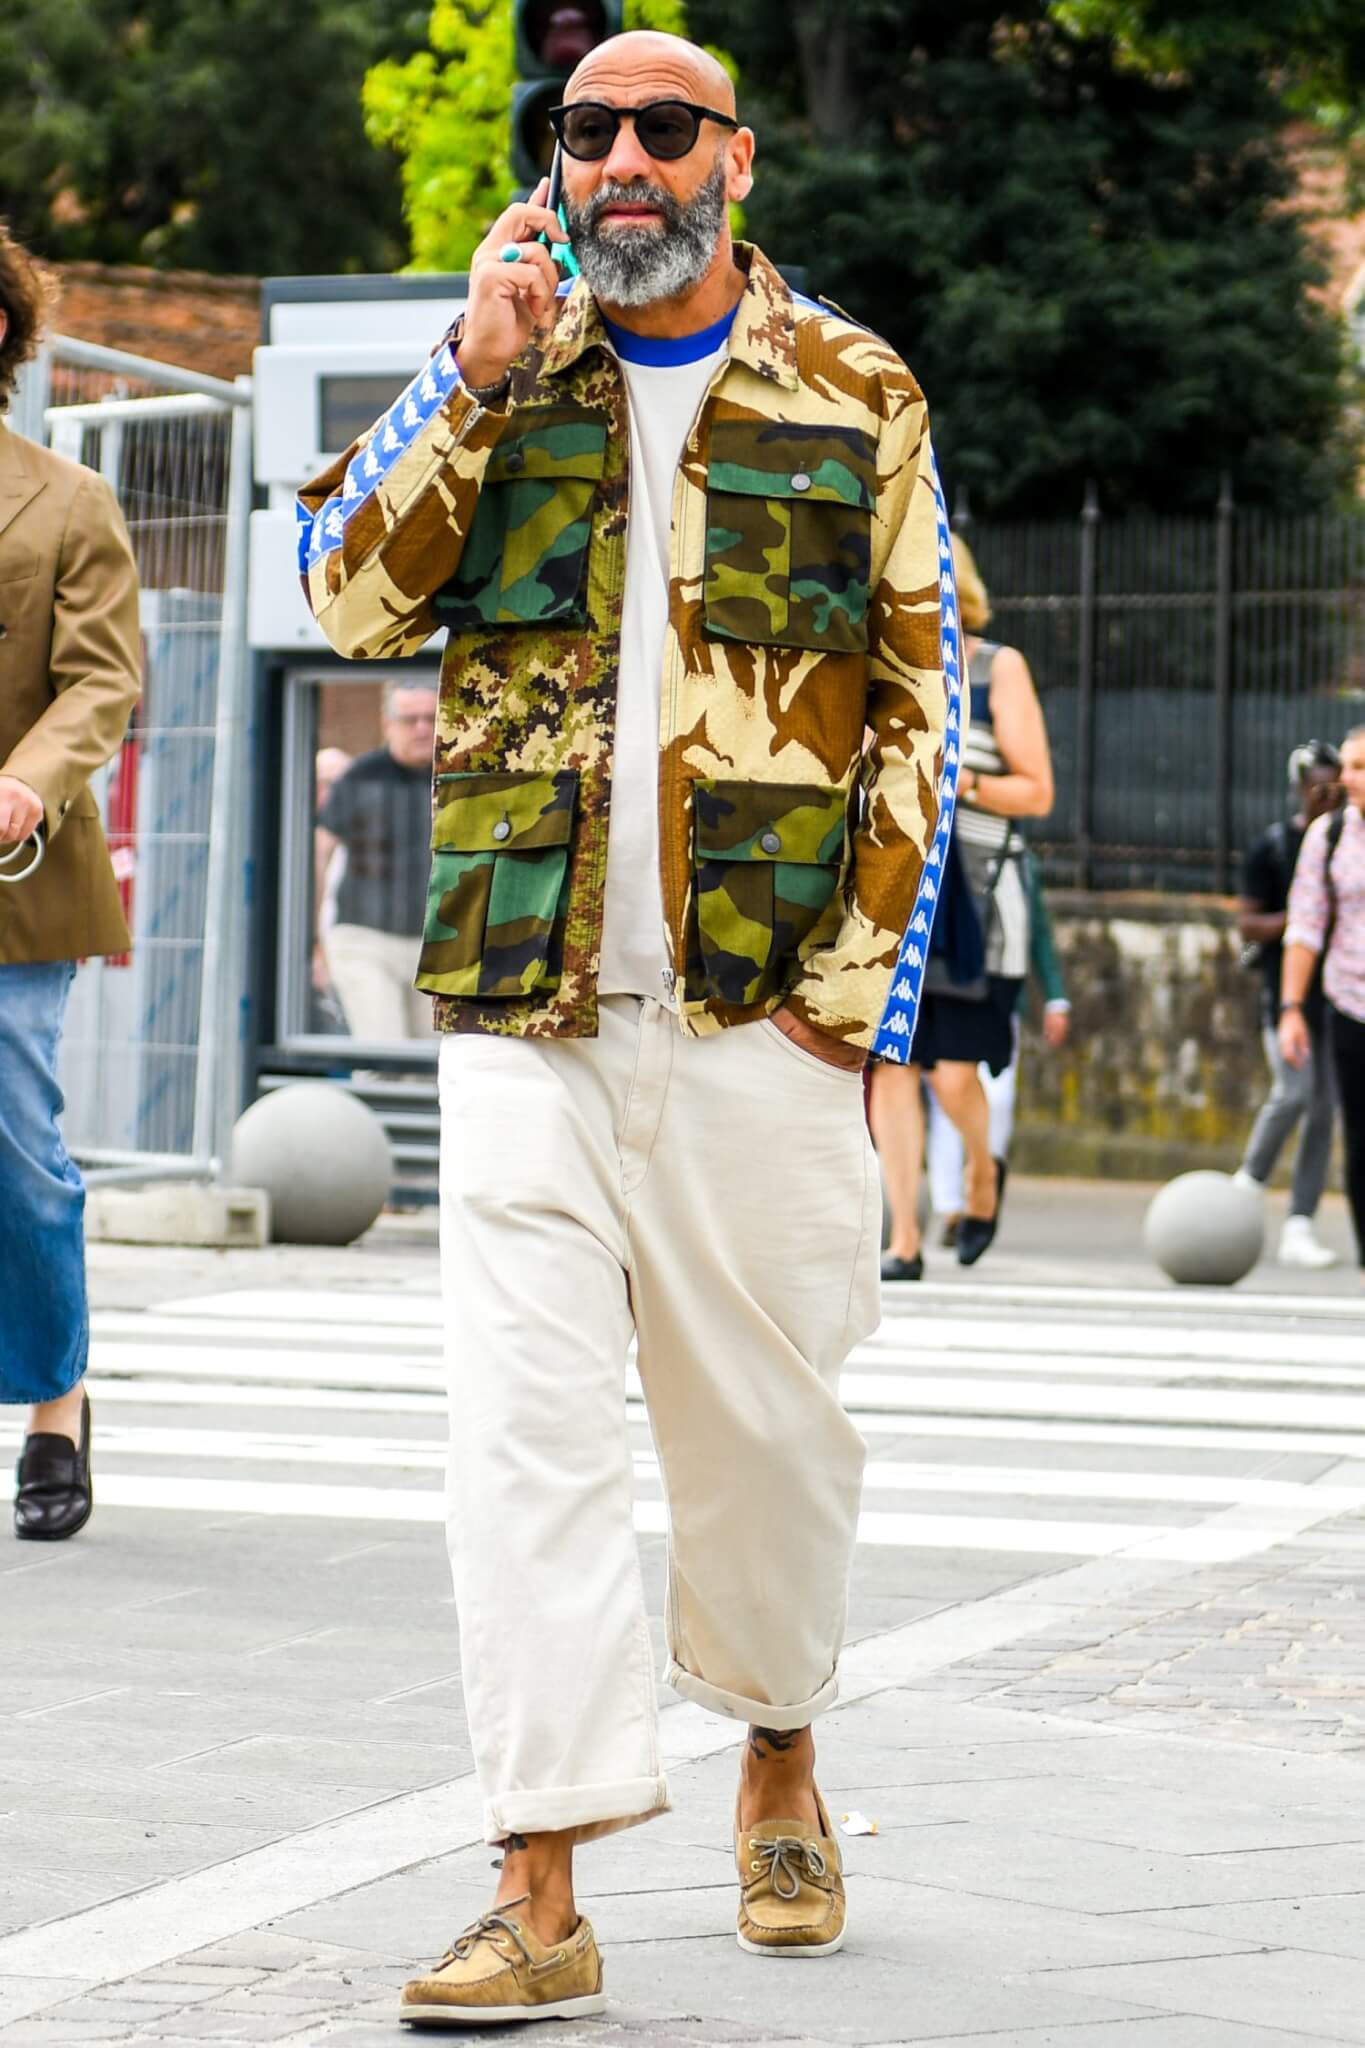 ホワイトジーンズは イイこと尽くめ の万能パンツ 注目のメンズコーデ アイテムを紹介 メンズファッションメディア Otokomaeotokomae 男前研究所